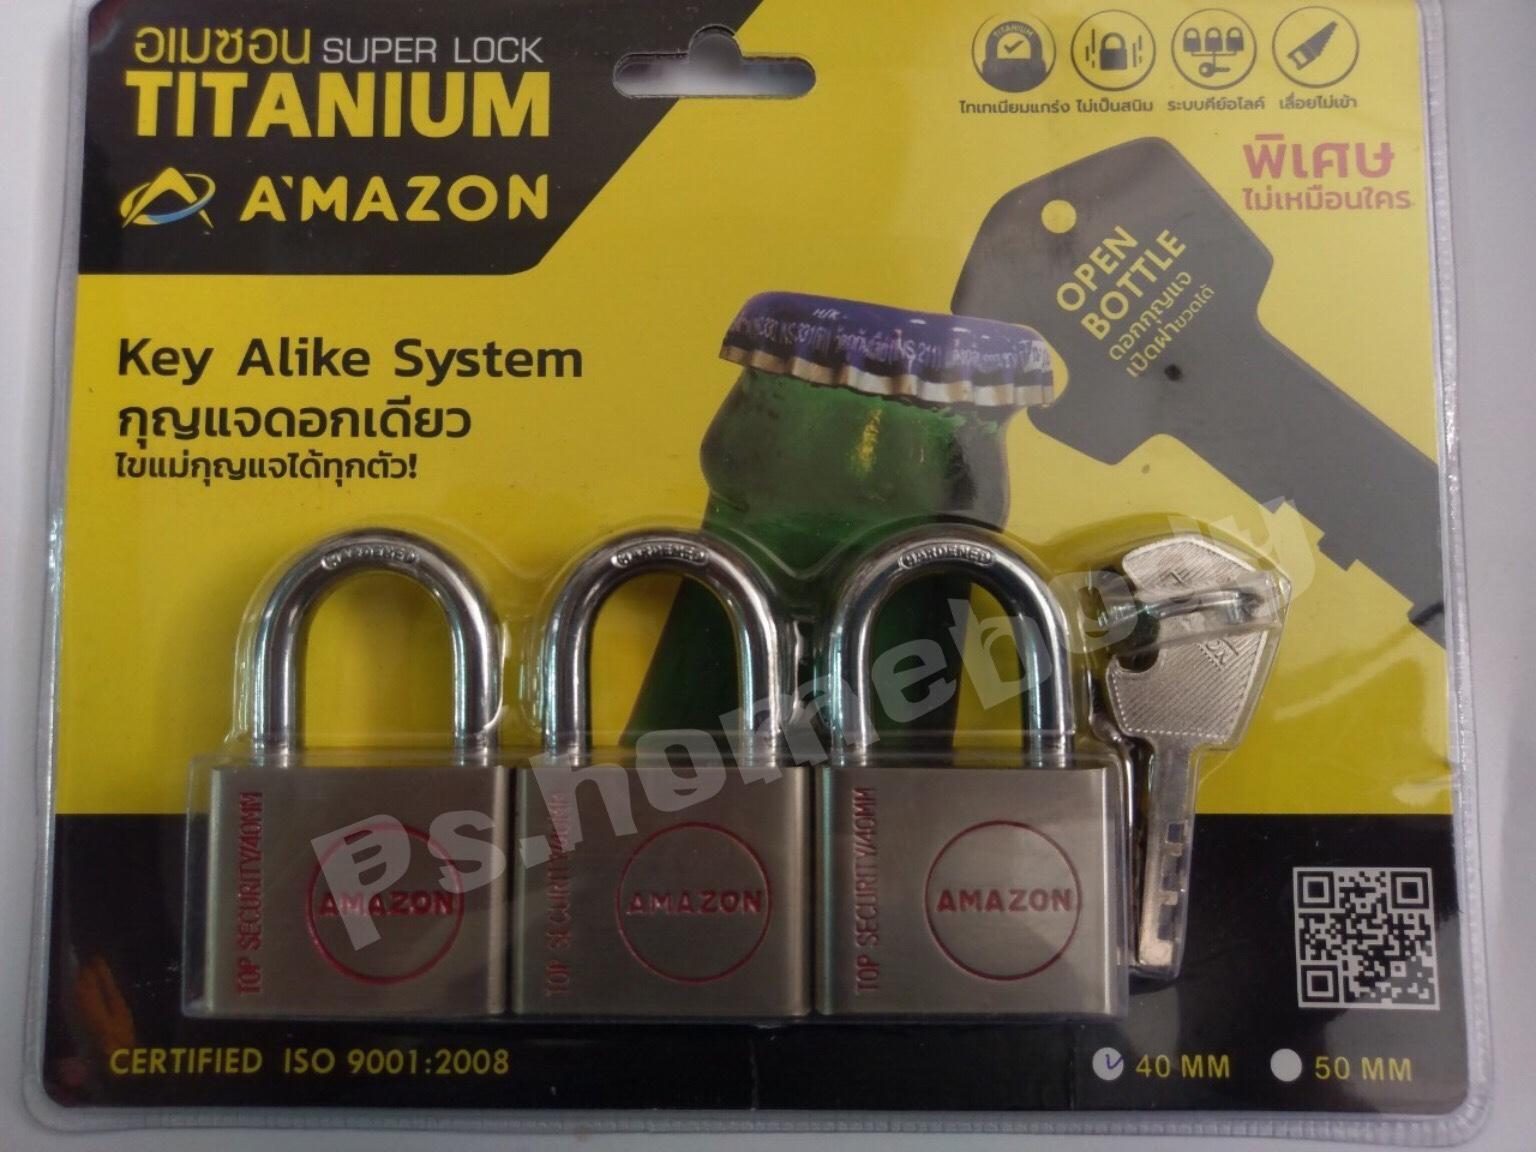 กุญแจชุด 3 ตัวชุด 40 มม.อเมซอน AMAZON คอสั้น คีย์อะไลท์  ไทเทเนียมแกร่ง ไส้ทองเหลือง ไม่เป็นสนิม  เลื่อยไม่เข้า A'mazon Super lock TiTanium